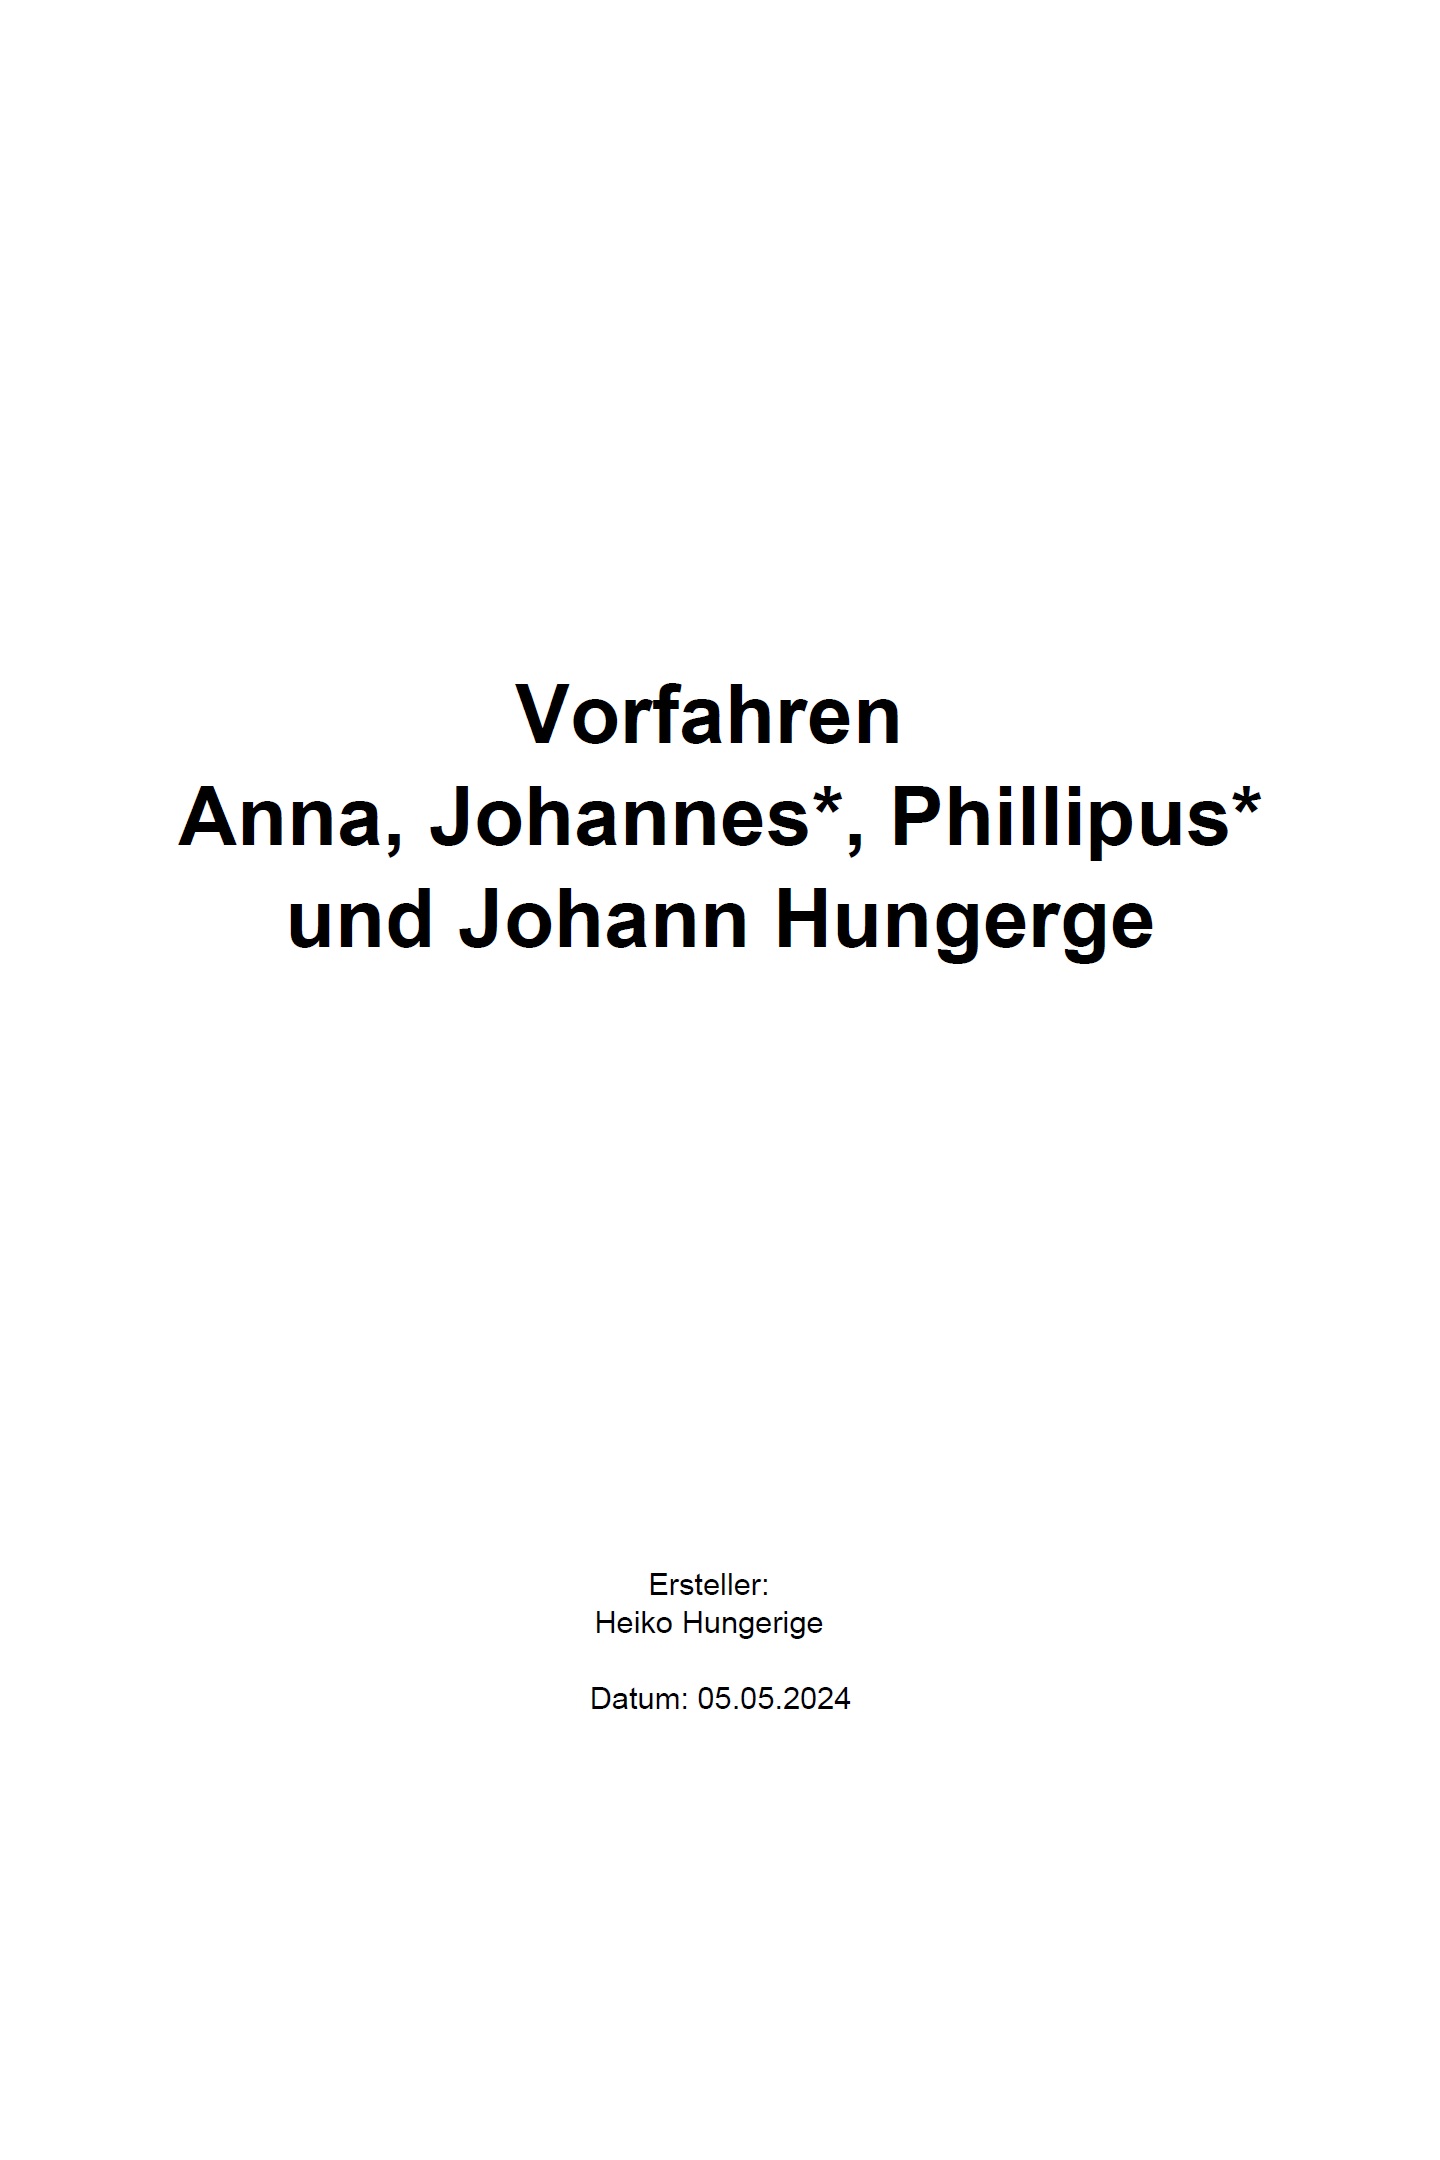 Ahnenbuch (Beispiel 3) mit Ahnenblatt 4.06 - Vorfahren Anna, Johannes, Phillipus und Johann Hungerge